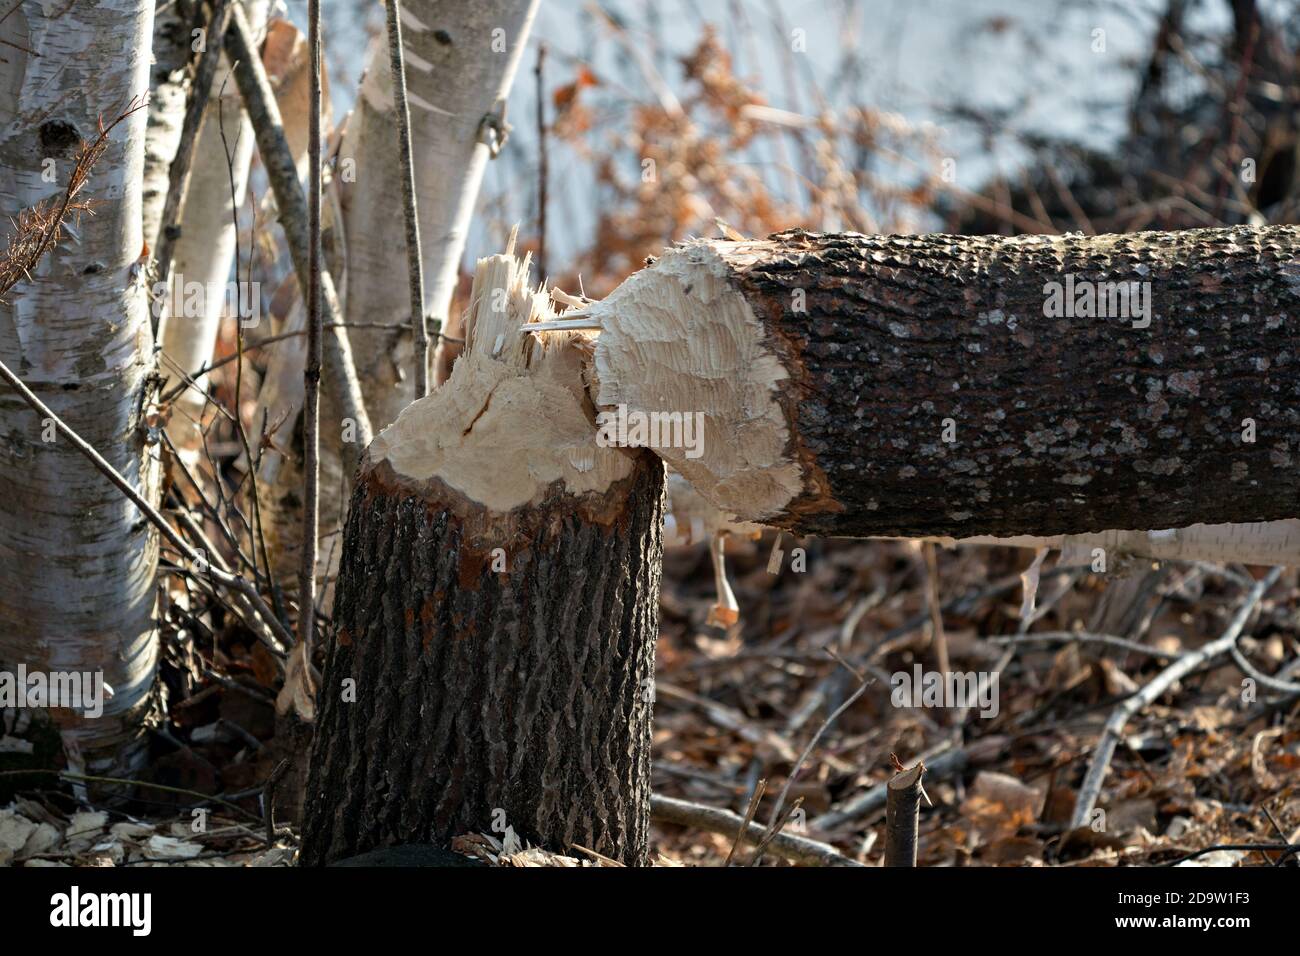 Photo de l'arbre Beaver Cut Down. Travail de castor. Photo de stock d'activité Beaver. Arbre abattu par le castor. Arbre coupé par les castors. Image de gros plan de la coupe de l'arbre. Banque D'Images